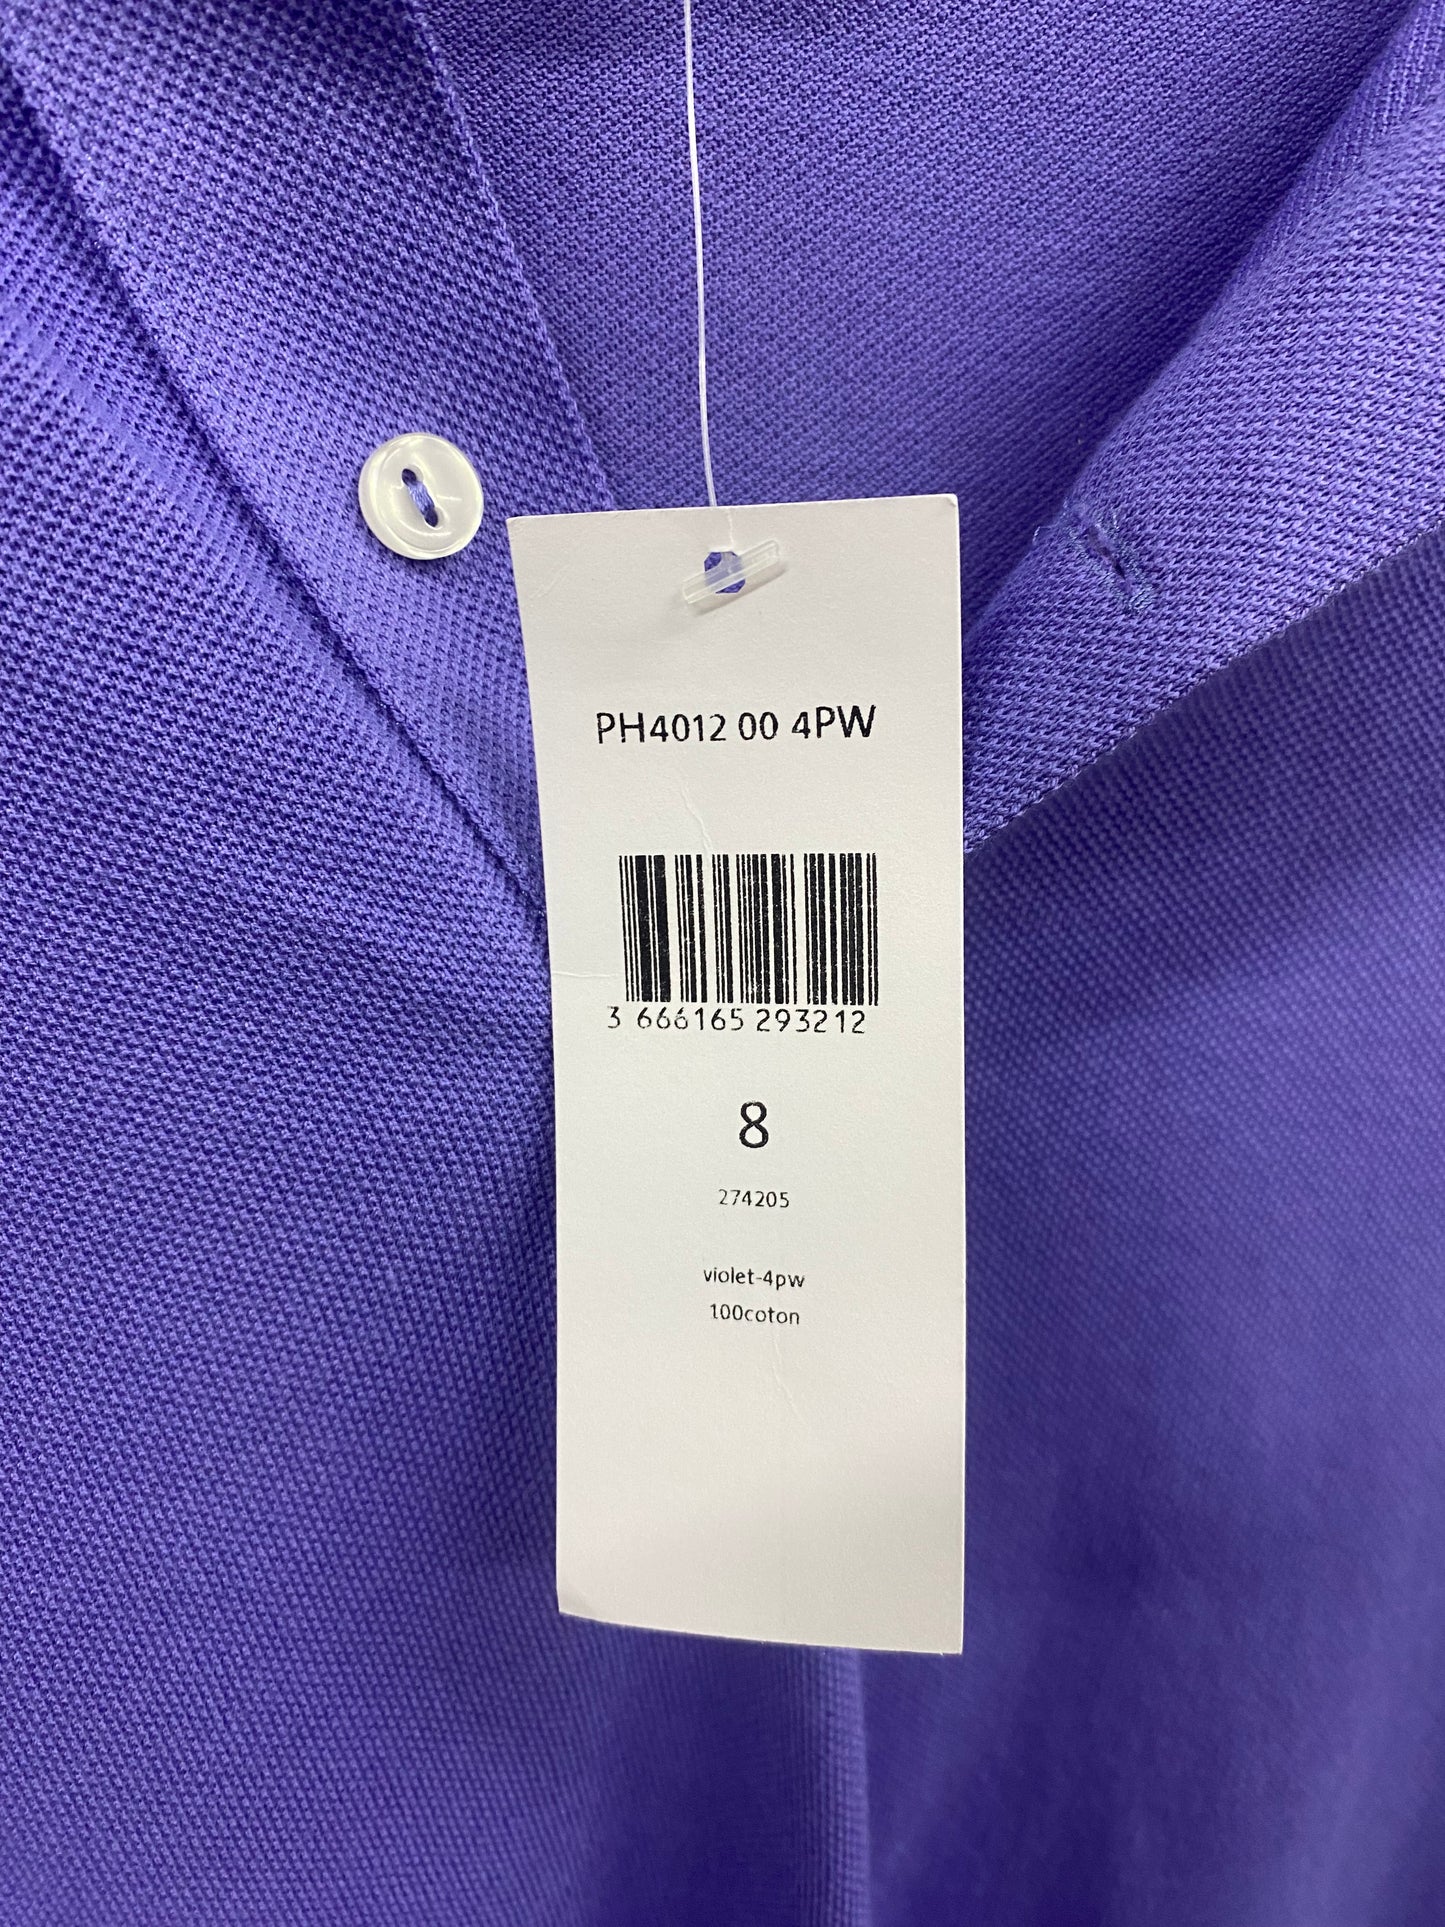 Lacoste Purple Slim Fit Polo Shirt BNWT